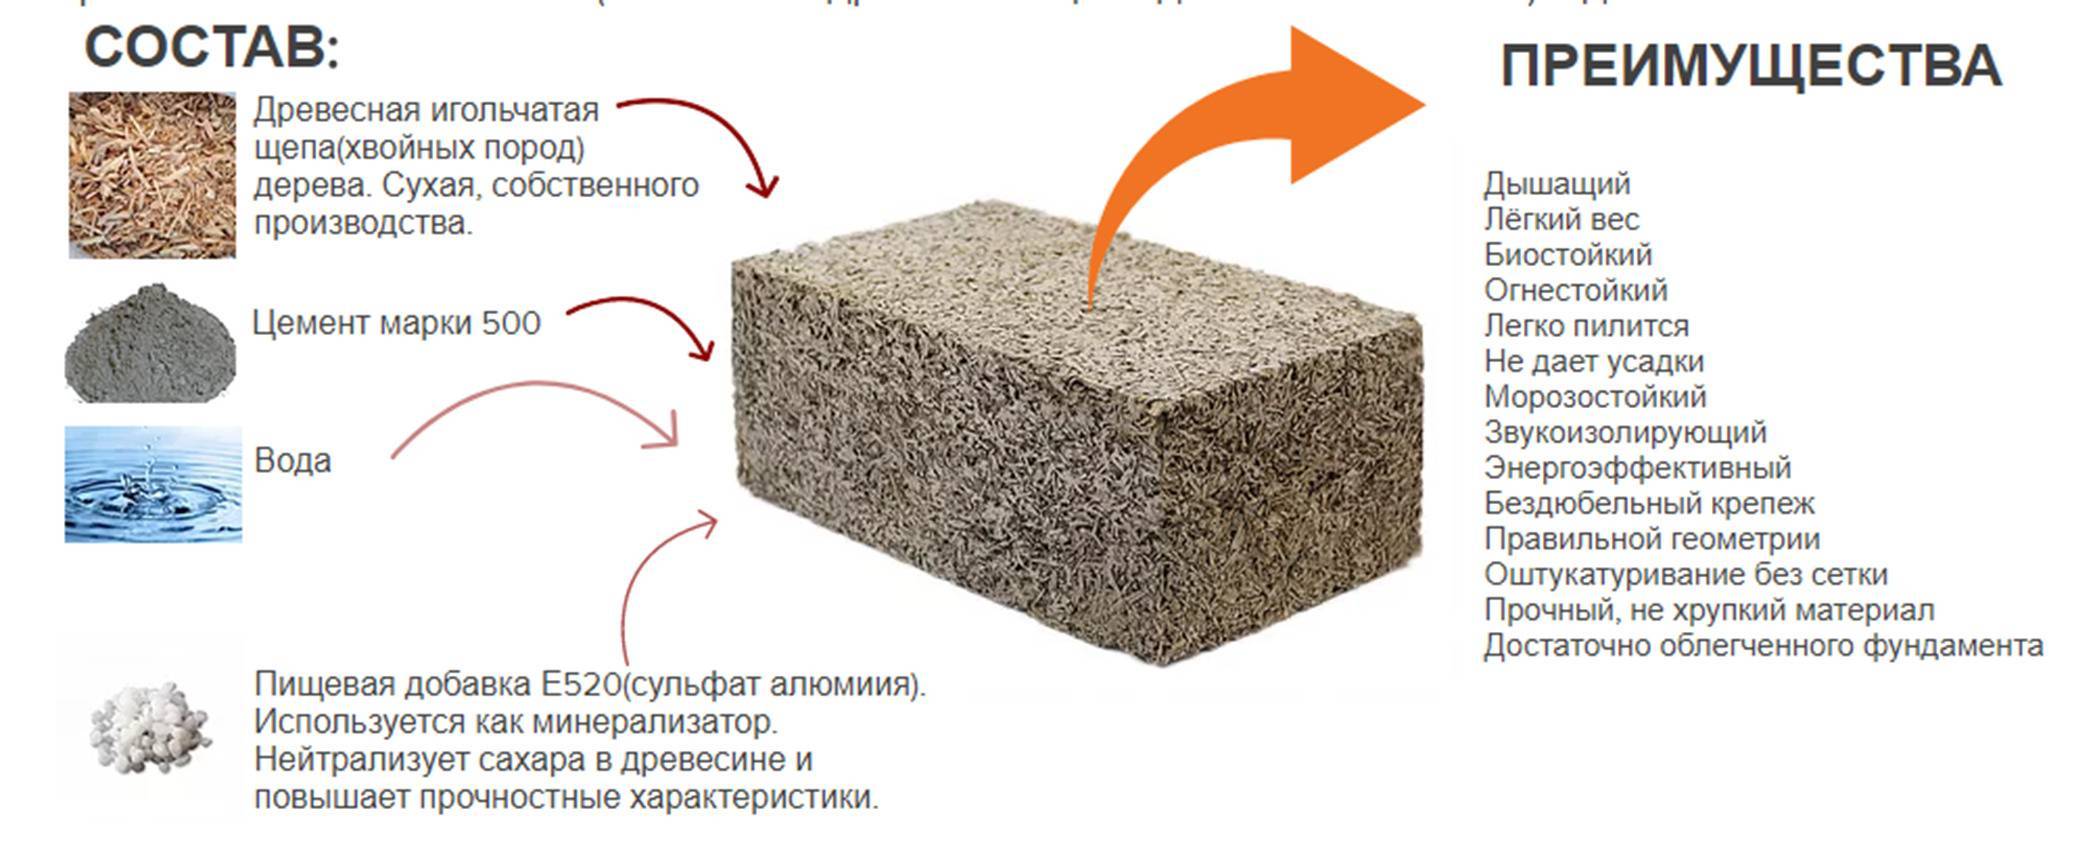 Арболит или газобетон (пеноблок, газосиликат): что лучше и теплее для строительства дома?